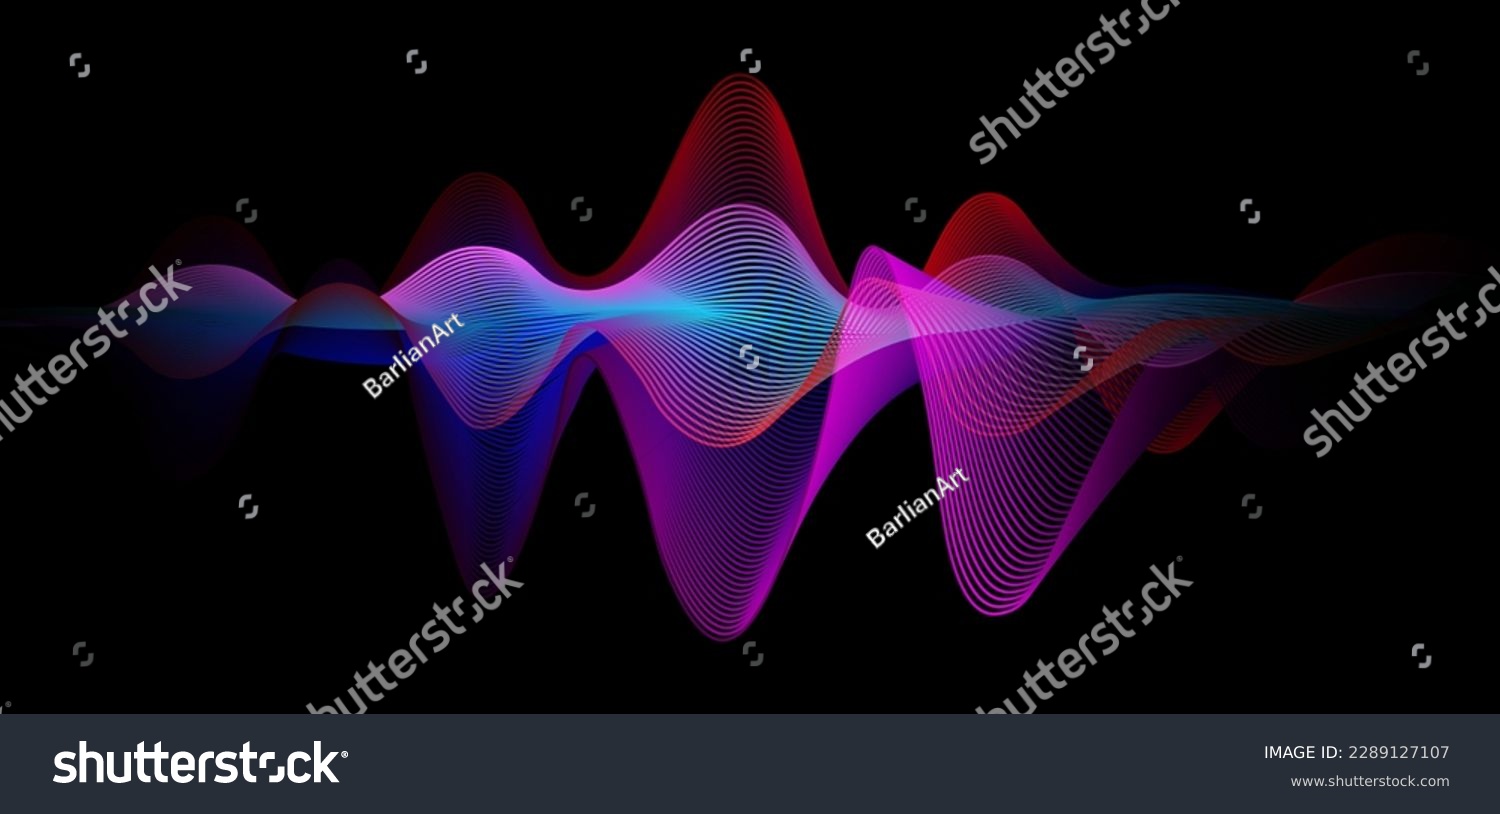 Music equalizer sound wave illustration vector. #2289127107